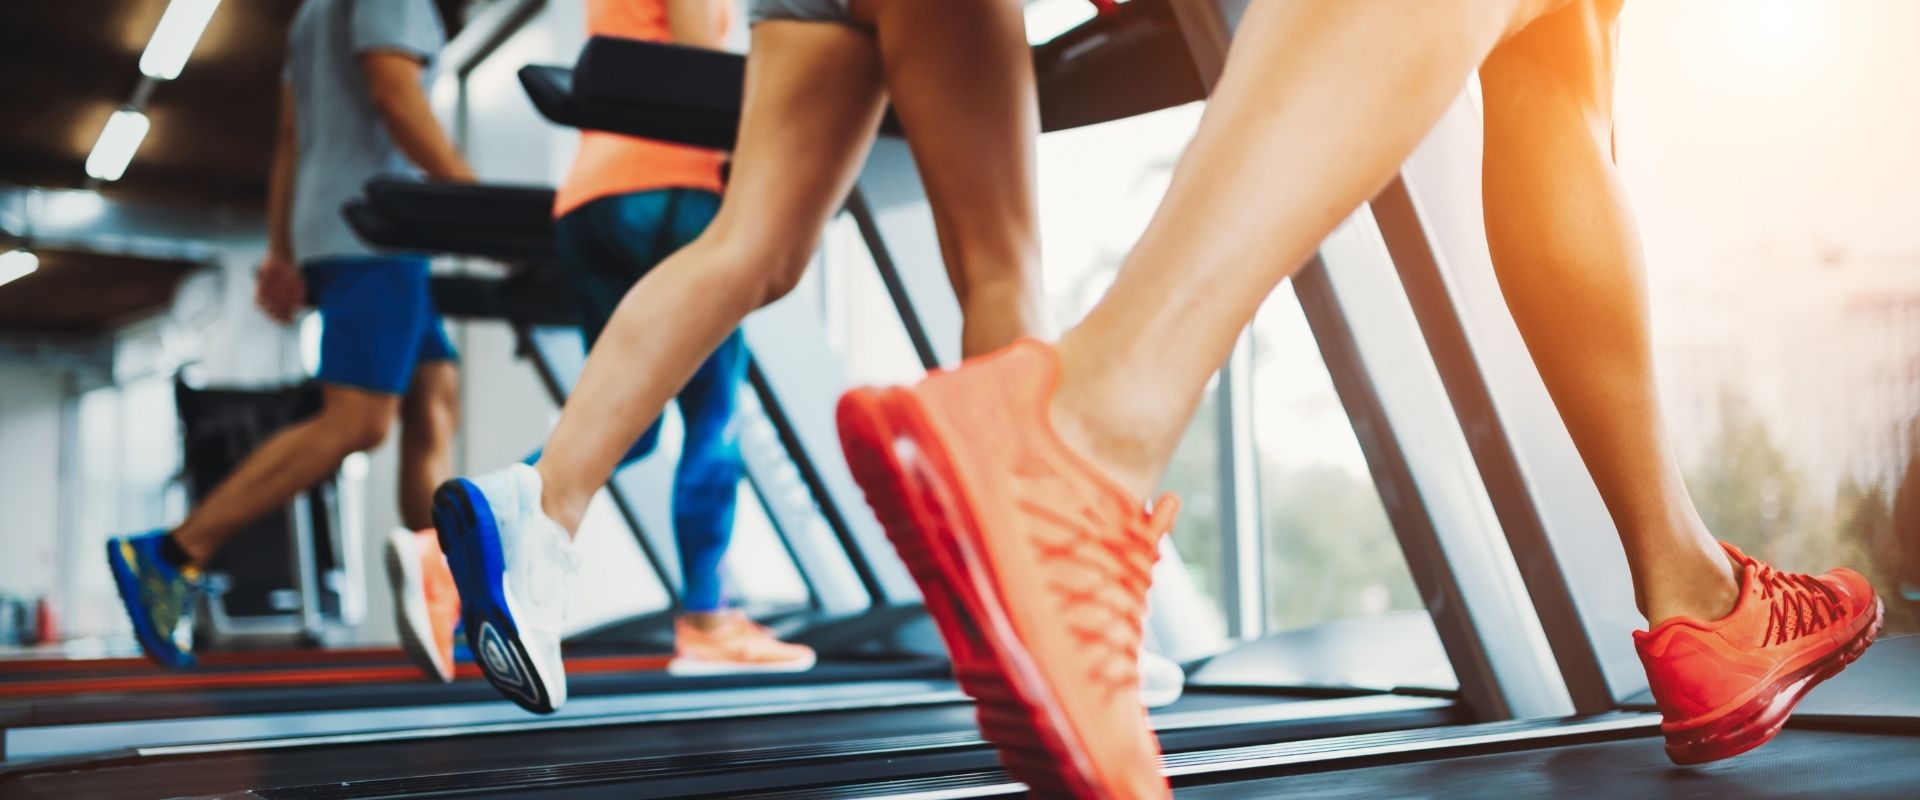 10 mistakes on a treadmill